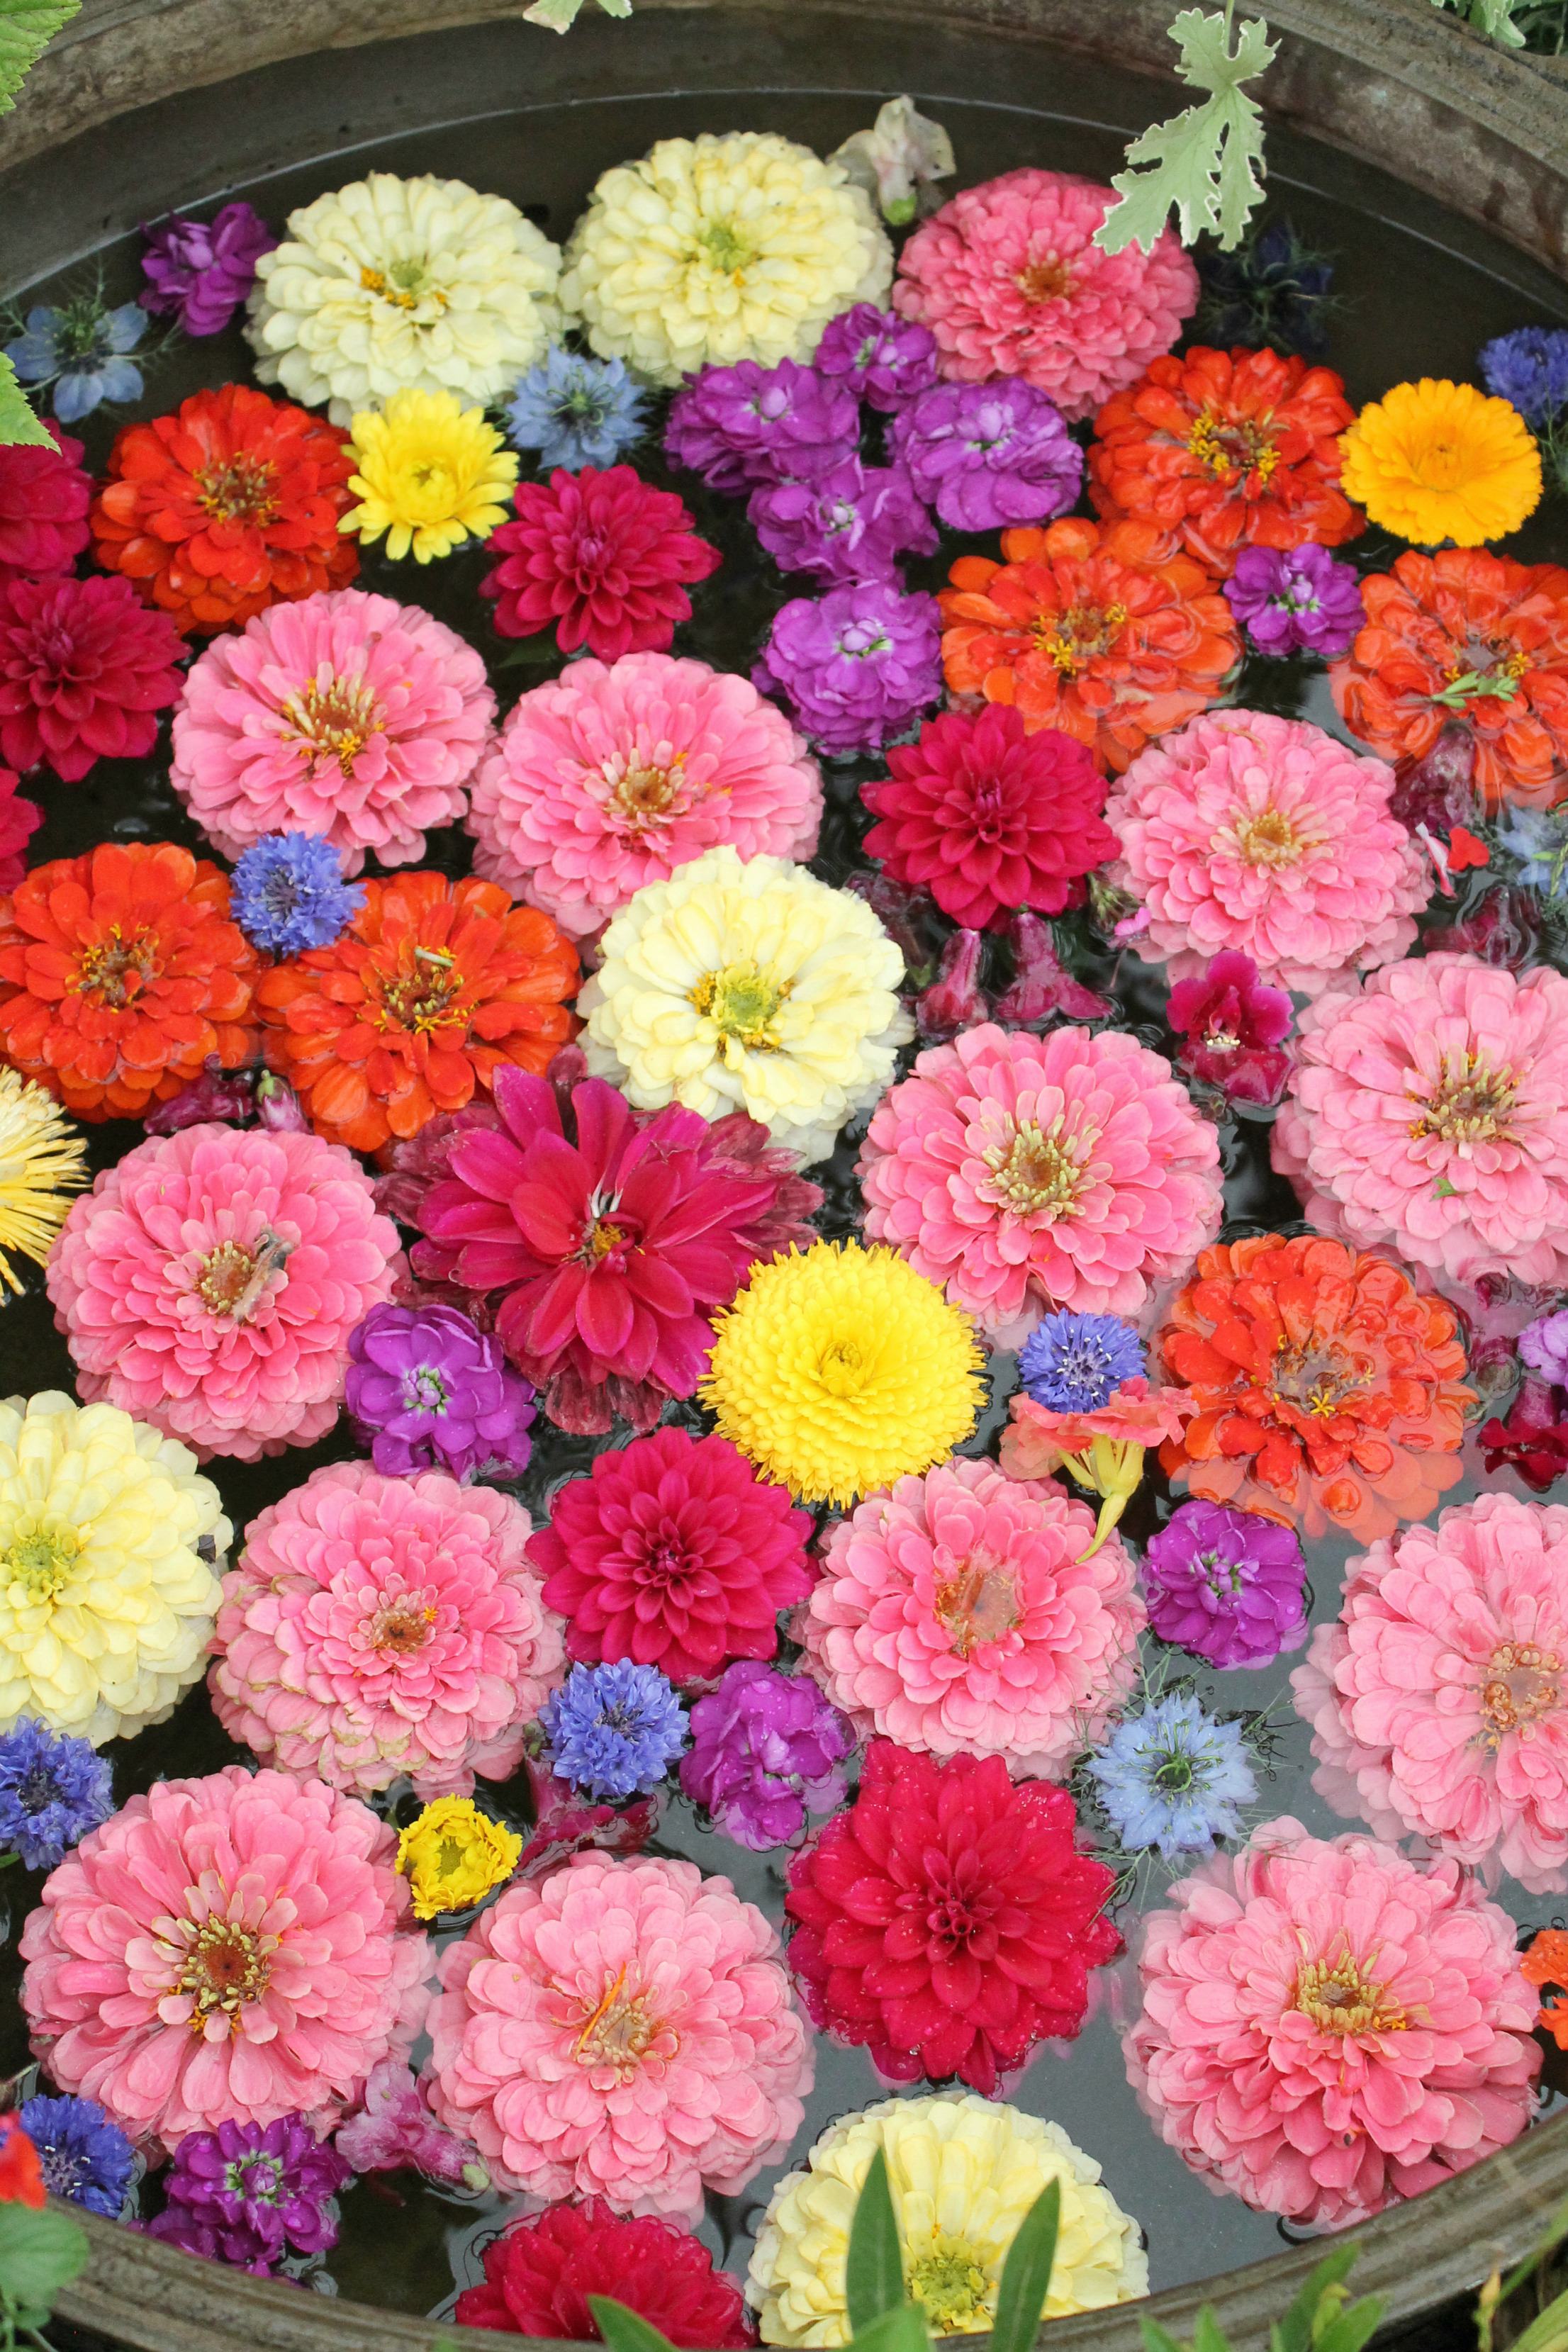 Petersham-nurseries-floral-display-by-Thomas-Broom-photo-by-Little-Big-Bell